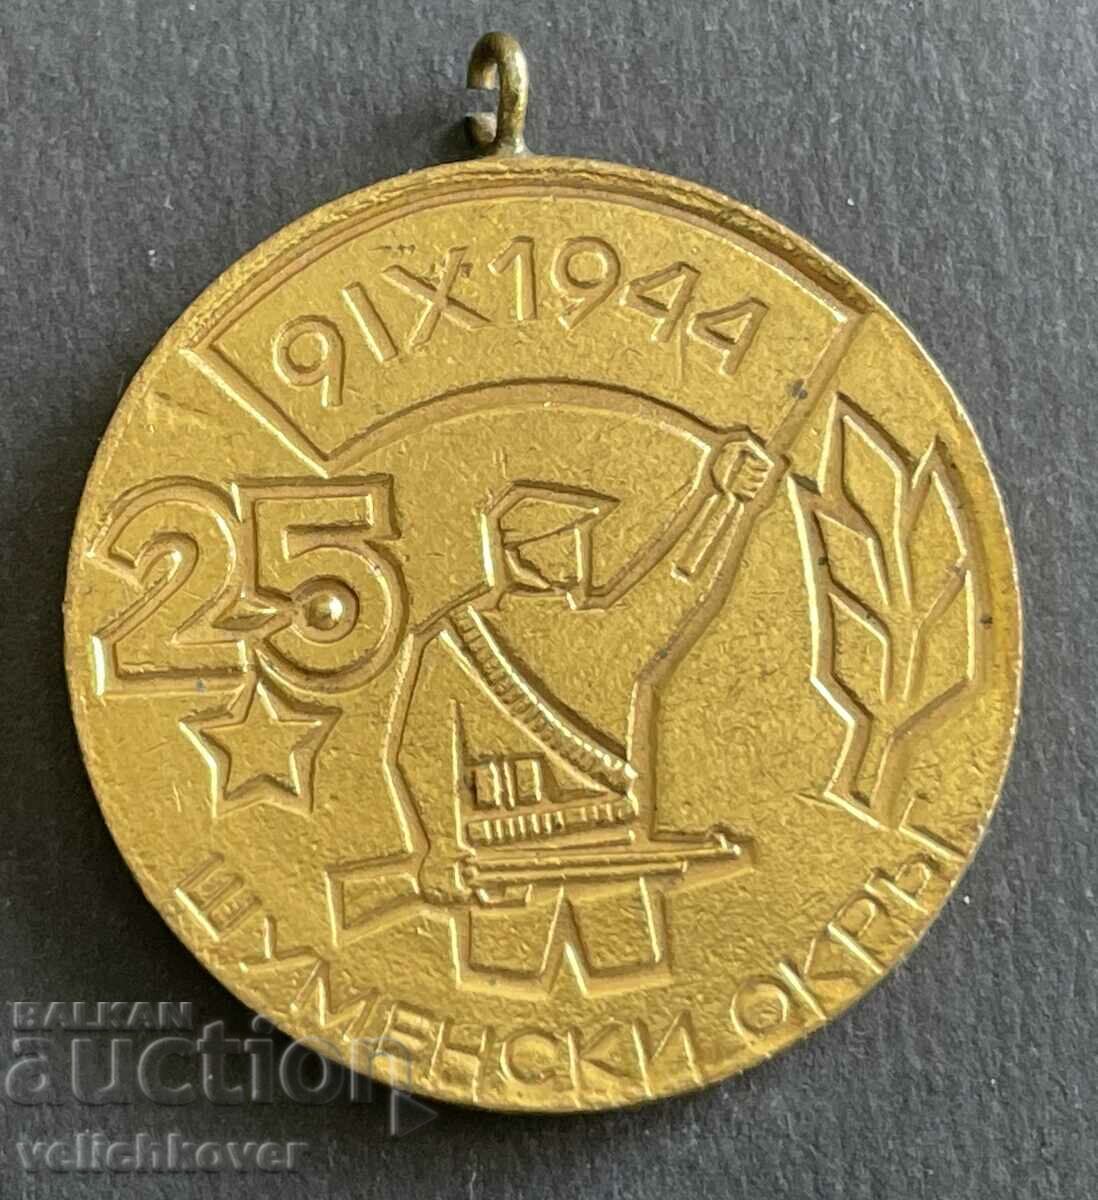 37248 България медал 25г. Шуменски окръг За Участие в социал